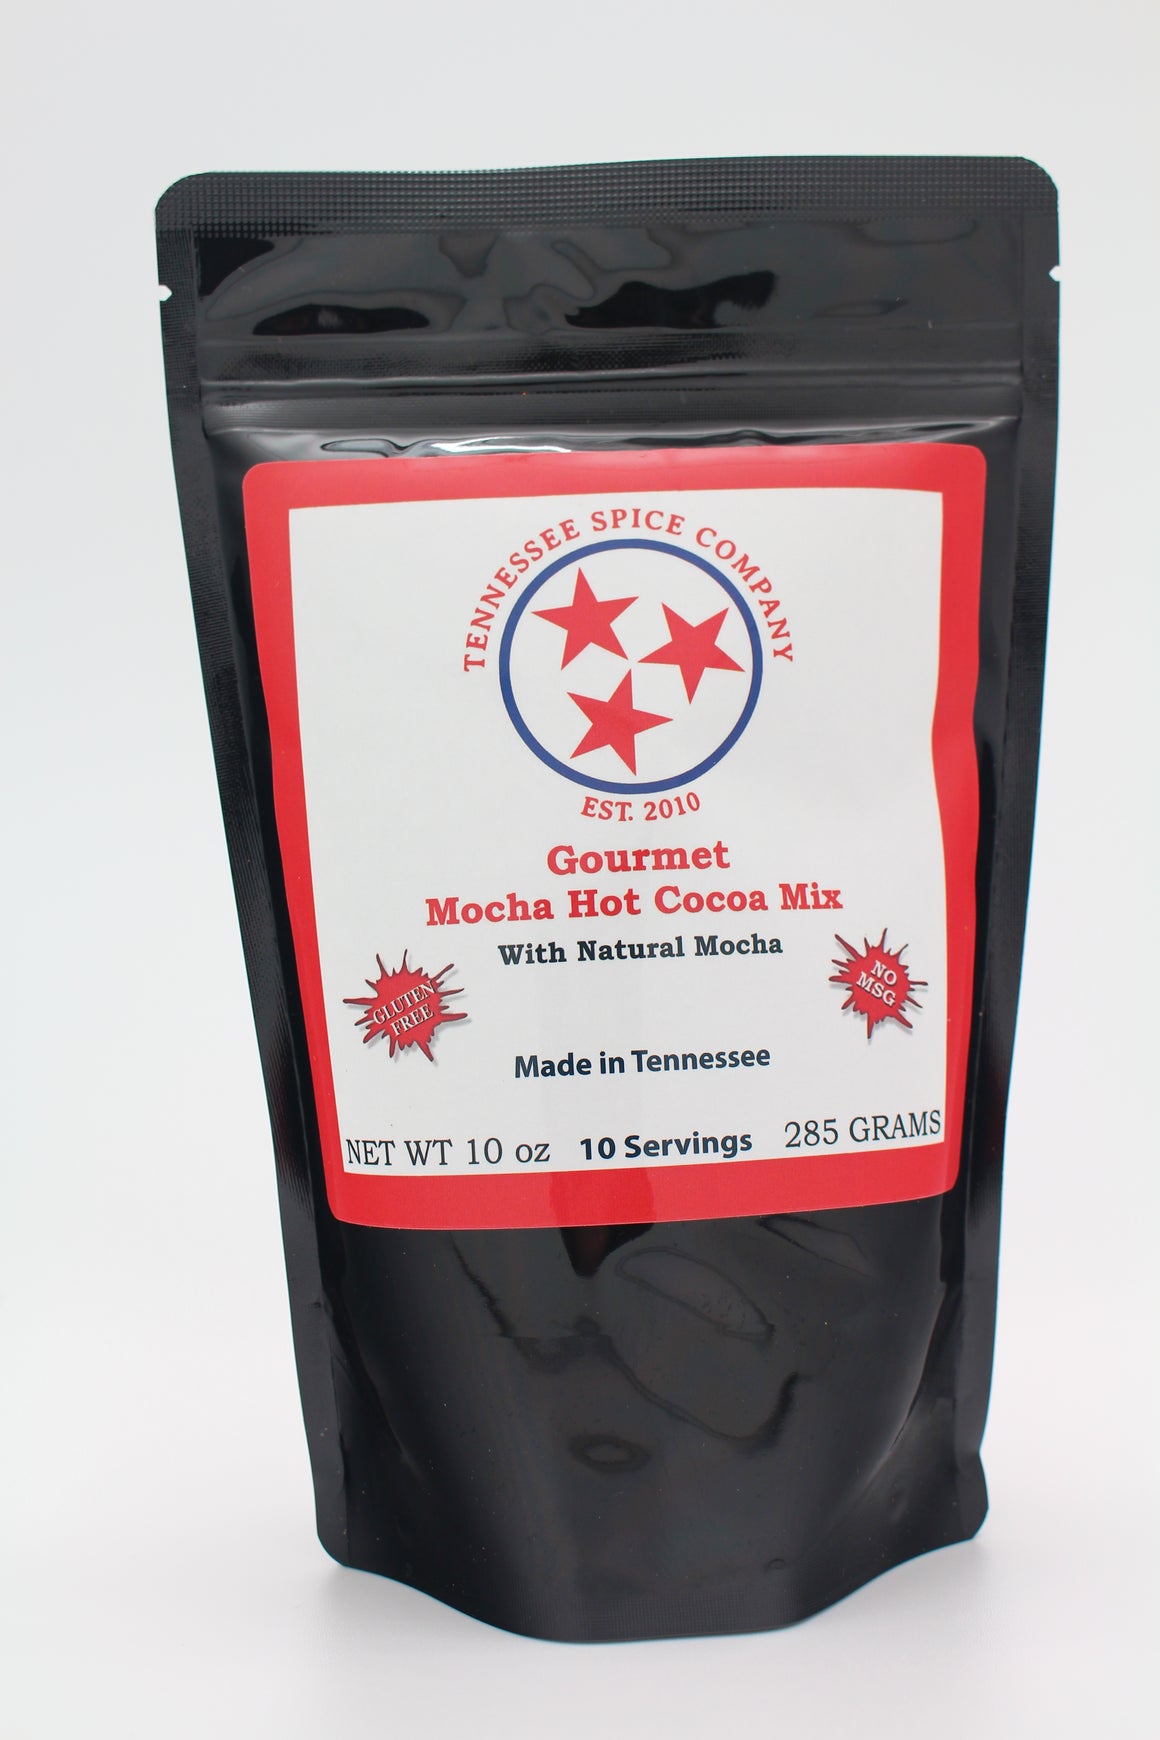 Gourmet Mocha Hot Cocoa Mix - TN Spice